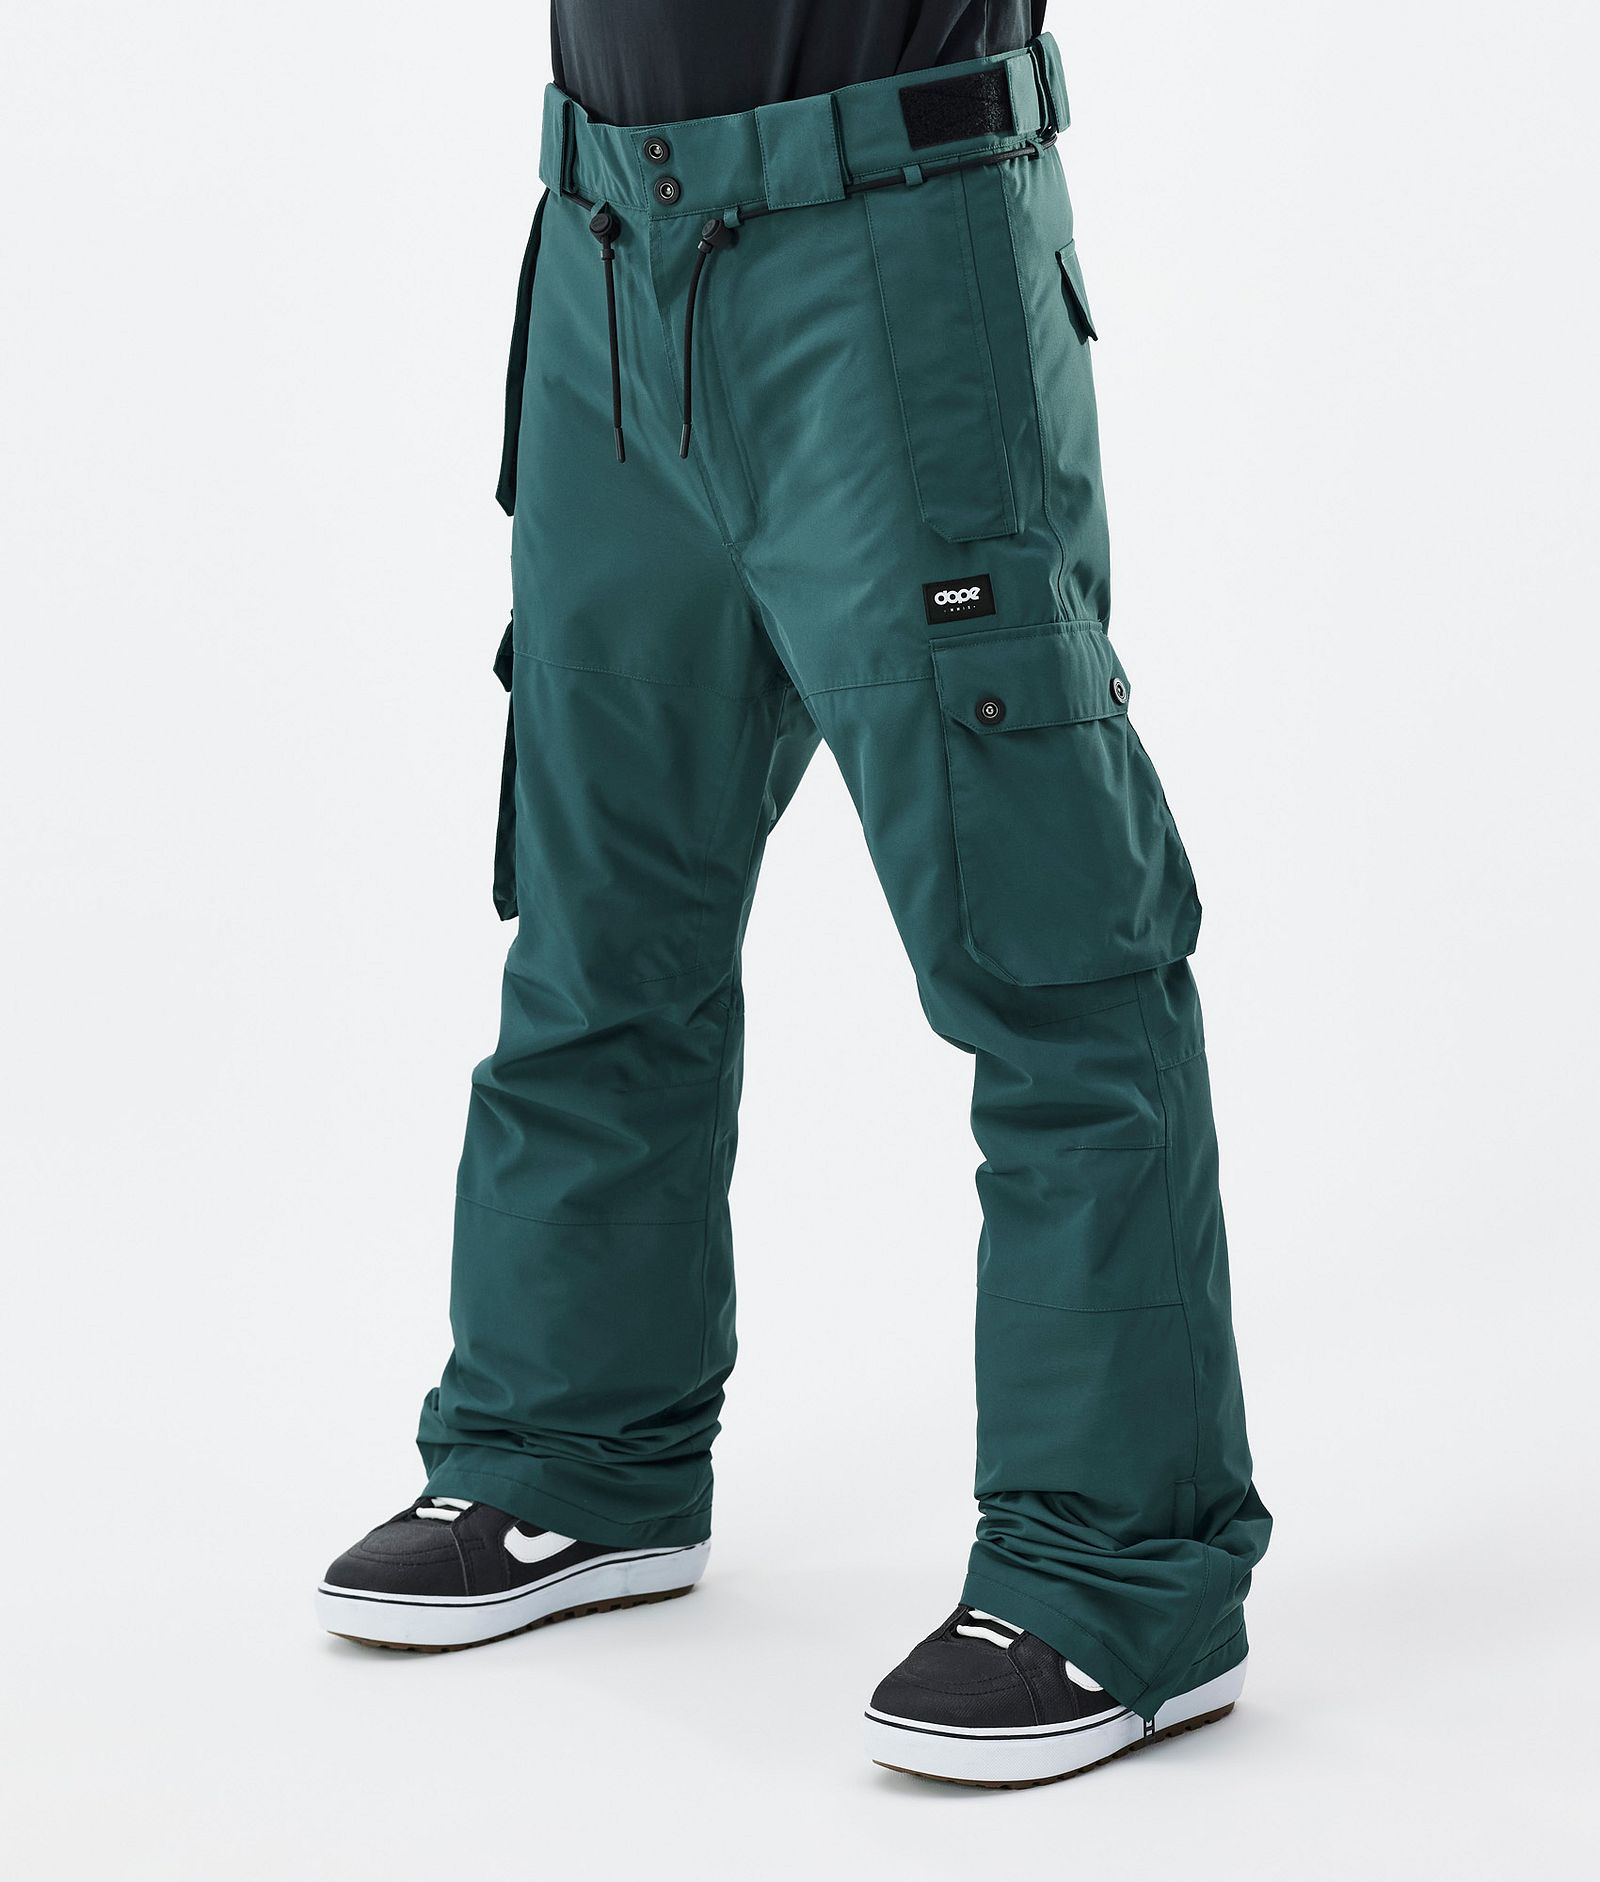 Dope Iconic Pantalones Snowboard Hombre Bottle Green Renewed, Imagen 1 de 7